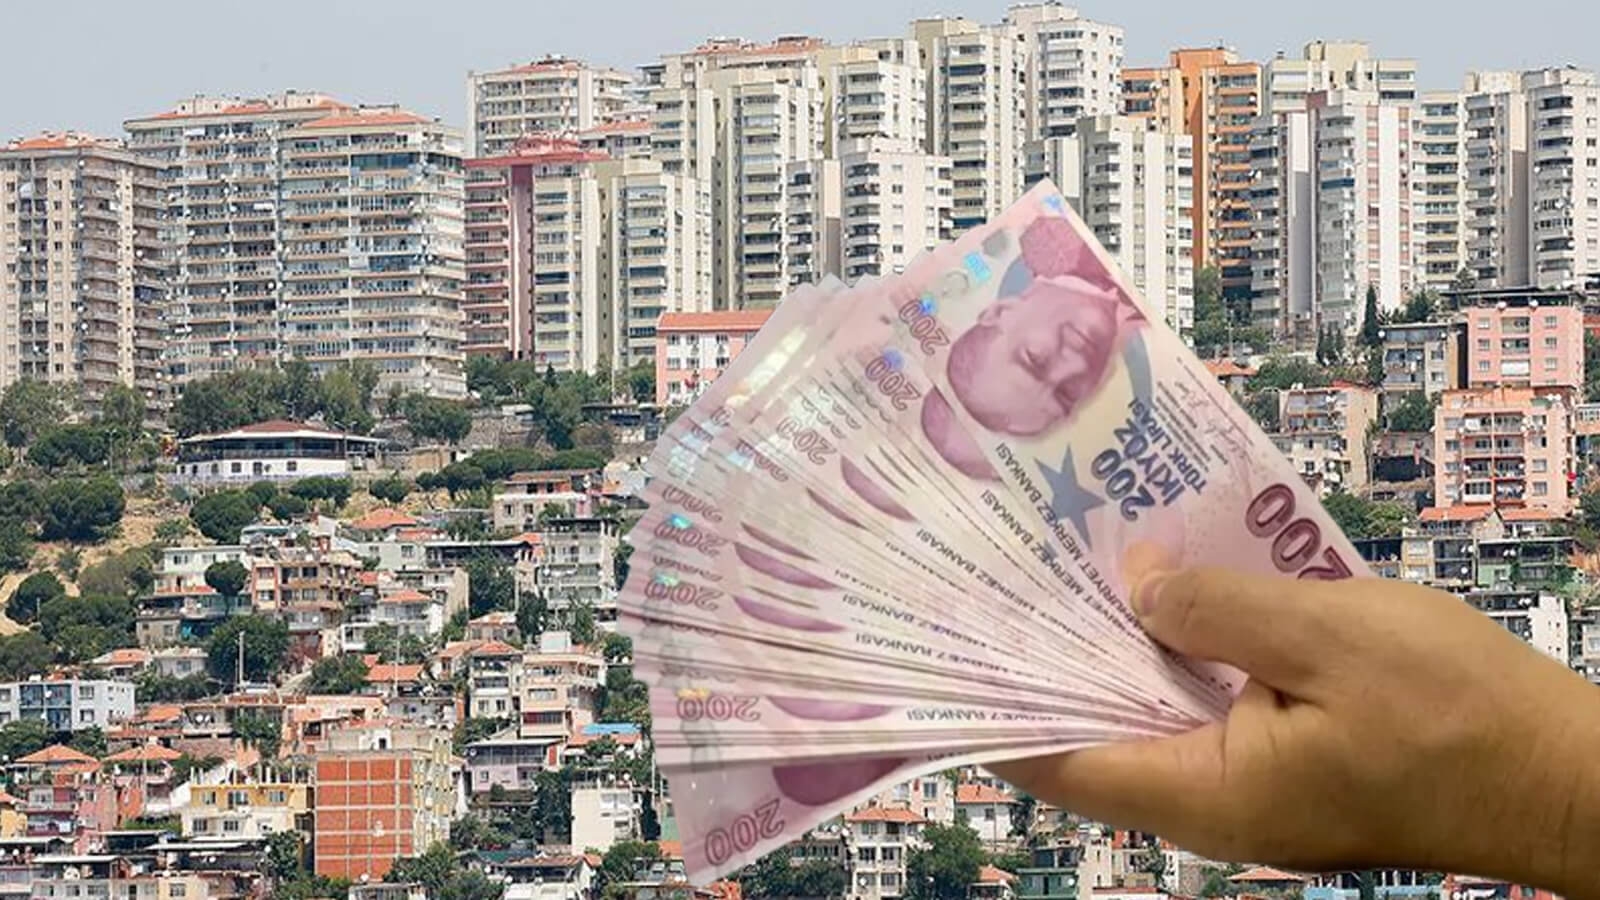 İstanbul’da site yöneticilerinin aldığı 200 bin TL maaş şaşkınlık yarattı